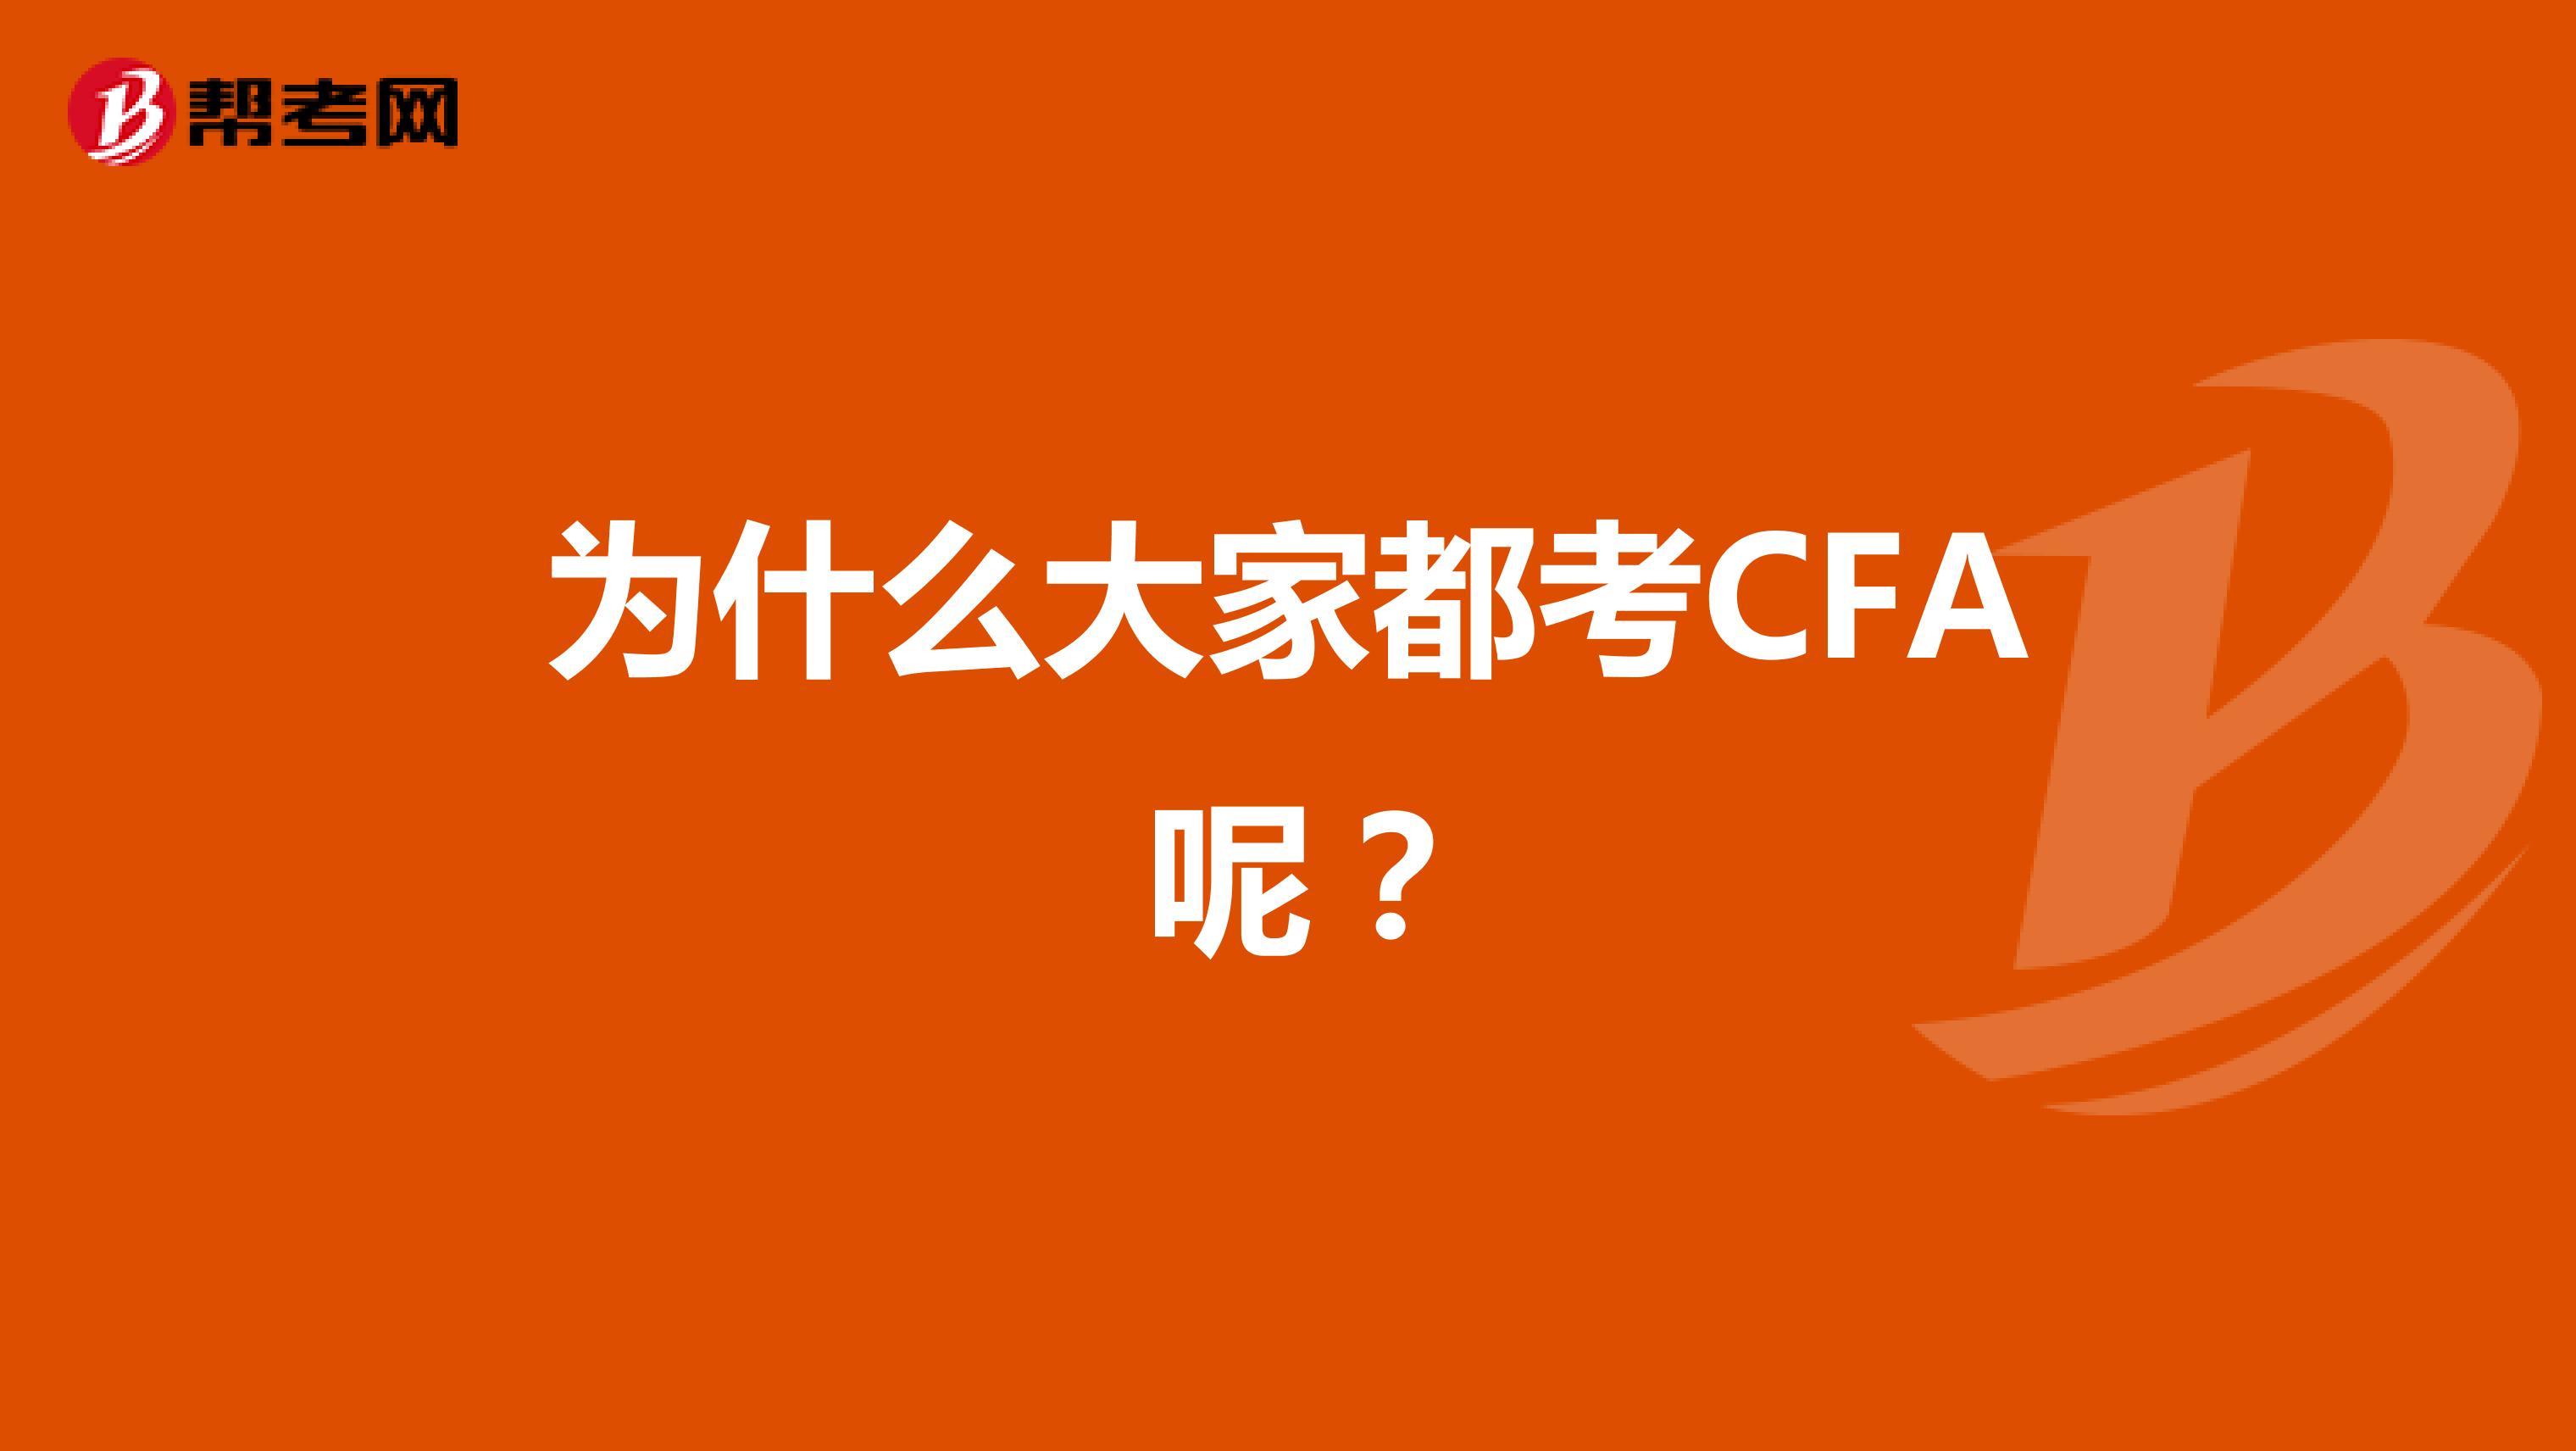 为什么大家都考CFA 呢？